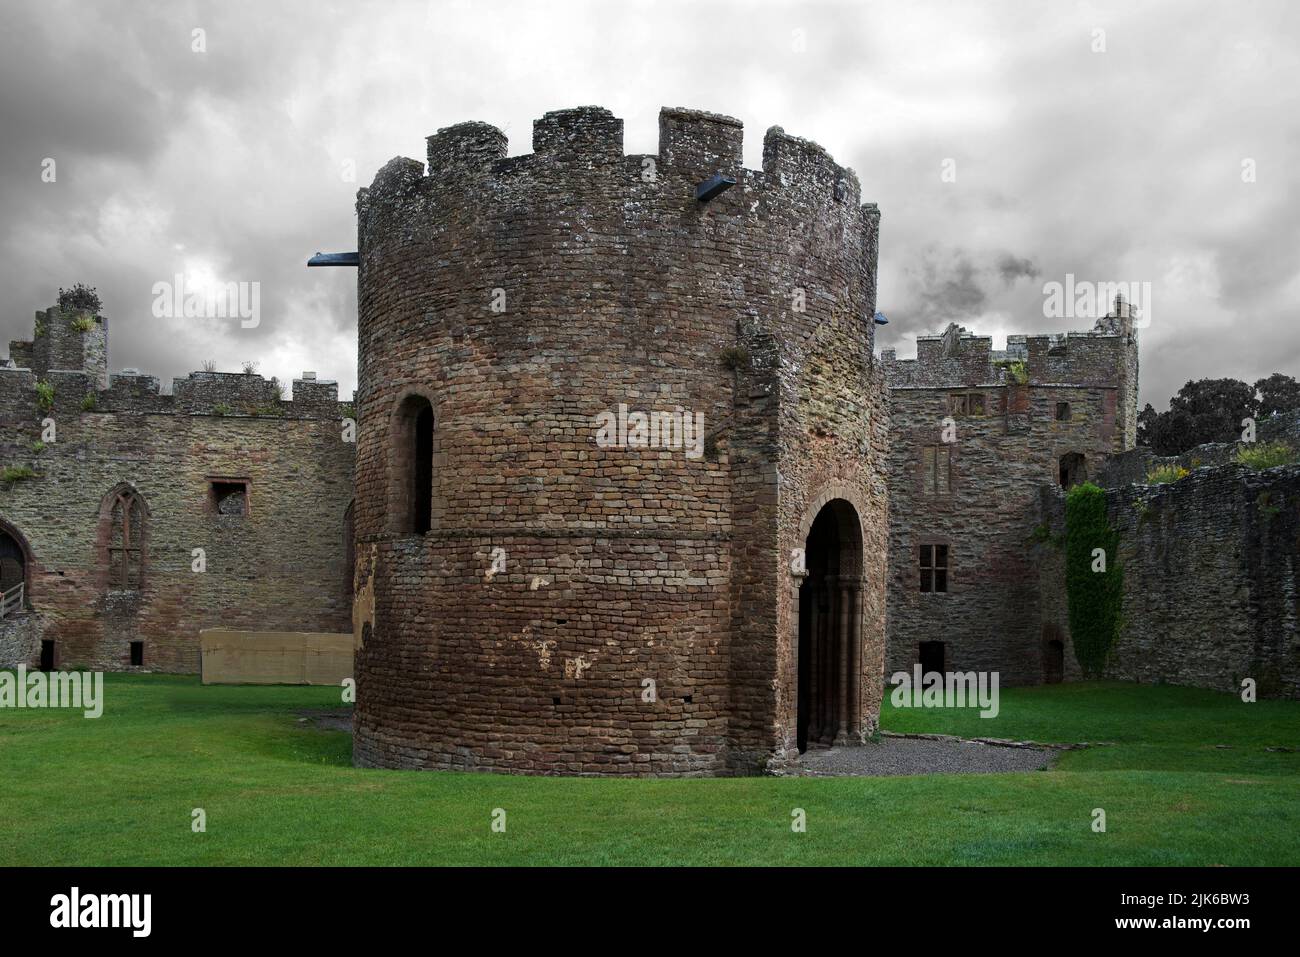 Le château de Ludlow est une fortification médiévale dans la ville de Ludlow, dans le Shropshire. Il a probablement été fondé par Walter de Lacy vers 1075. Banque D'Images